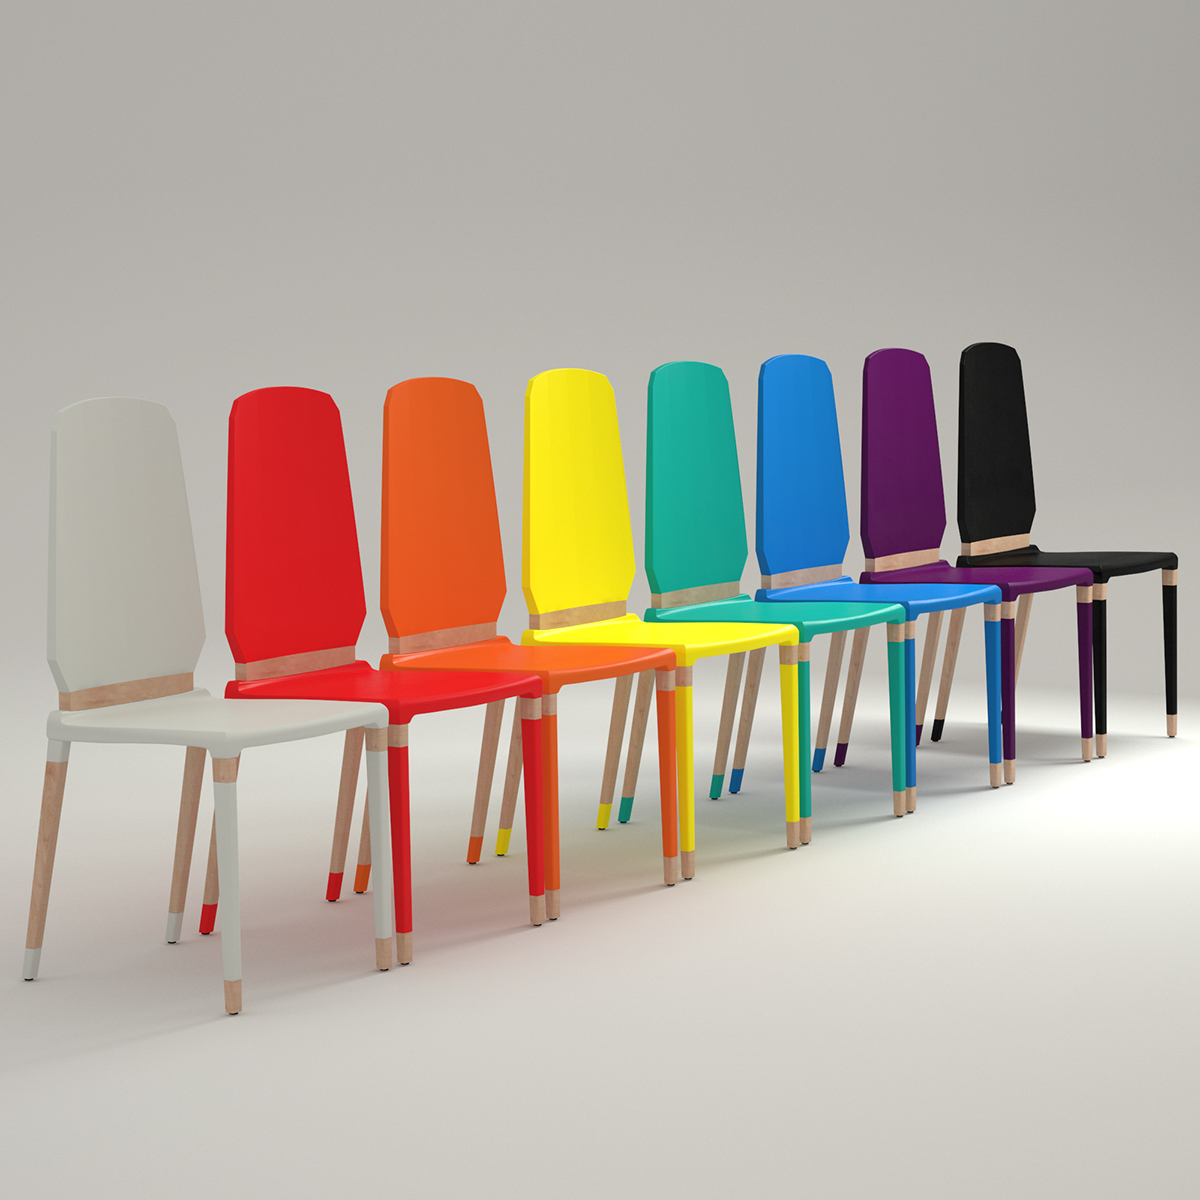 chair POP CHAIR italian design